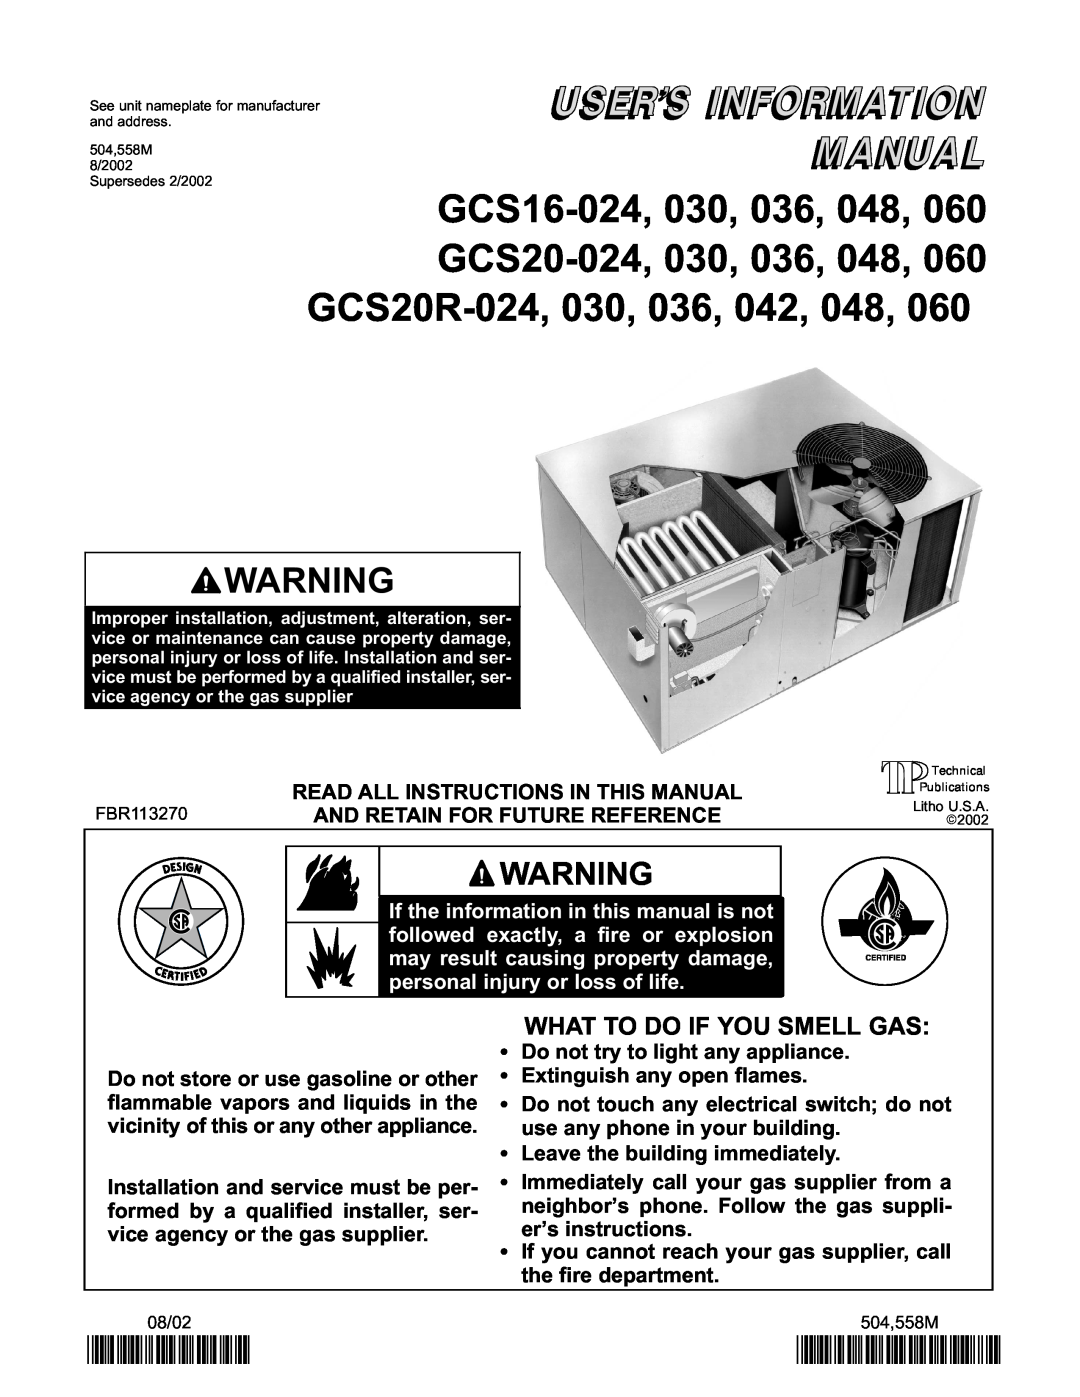 Lennox International Inc GCS20R-048, GCS20R-060, GCS20R-030, GCS20R-024 manual 2P0802, P504558M, What To Do If You Smell Gas 